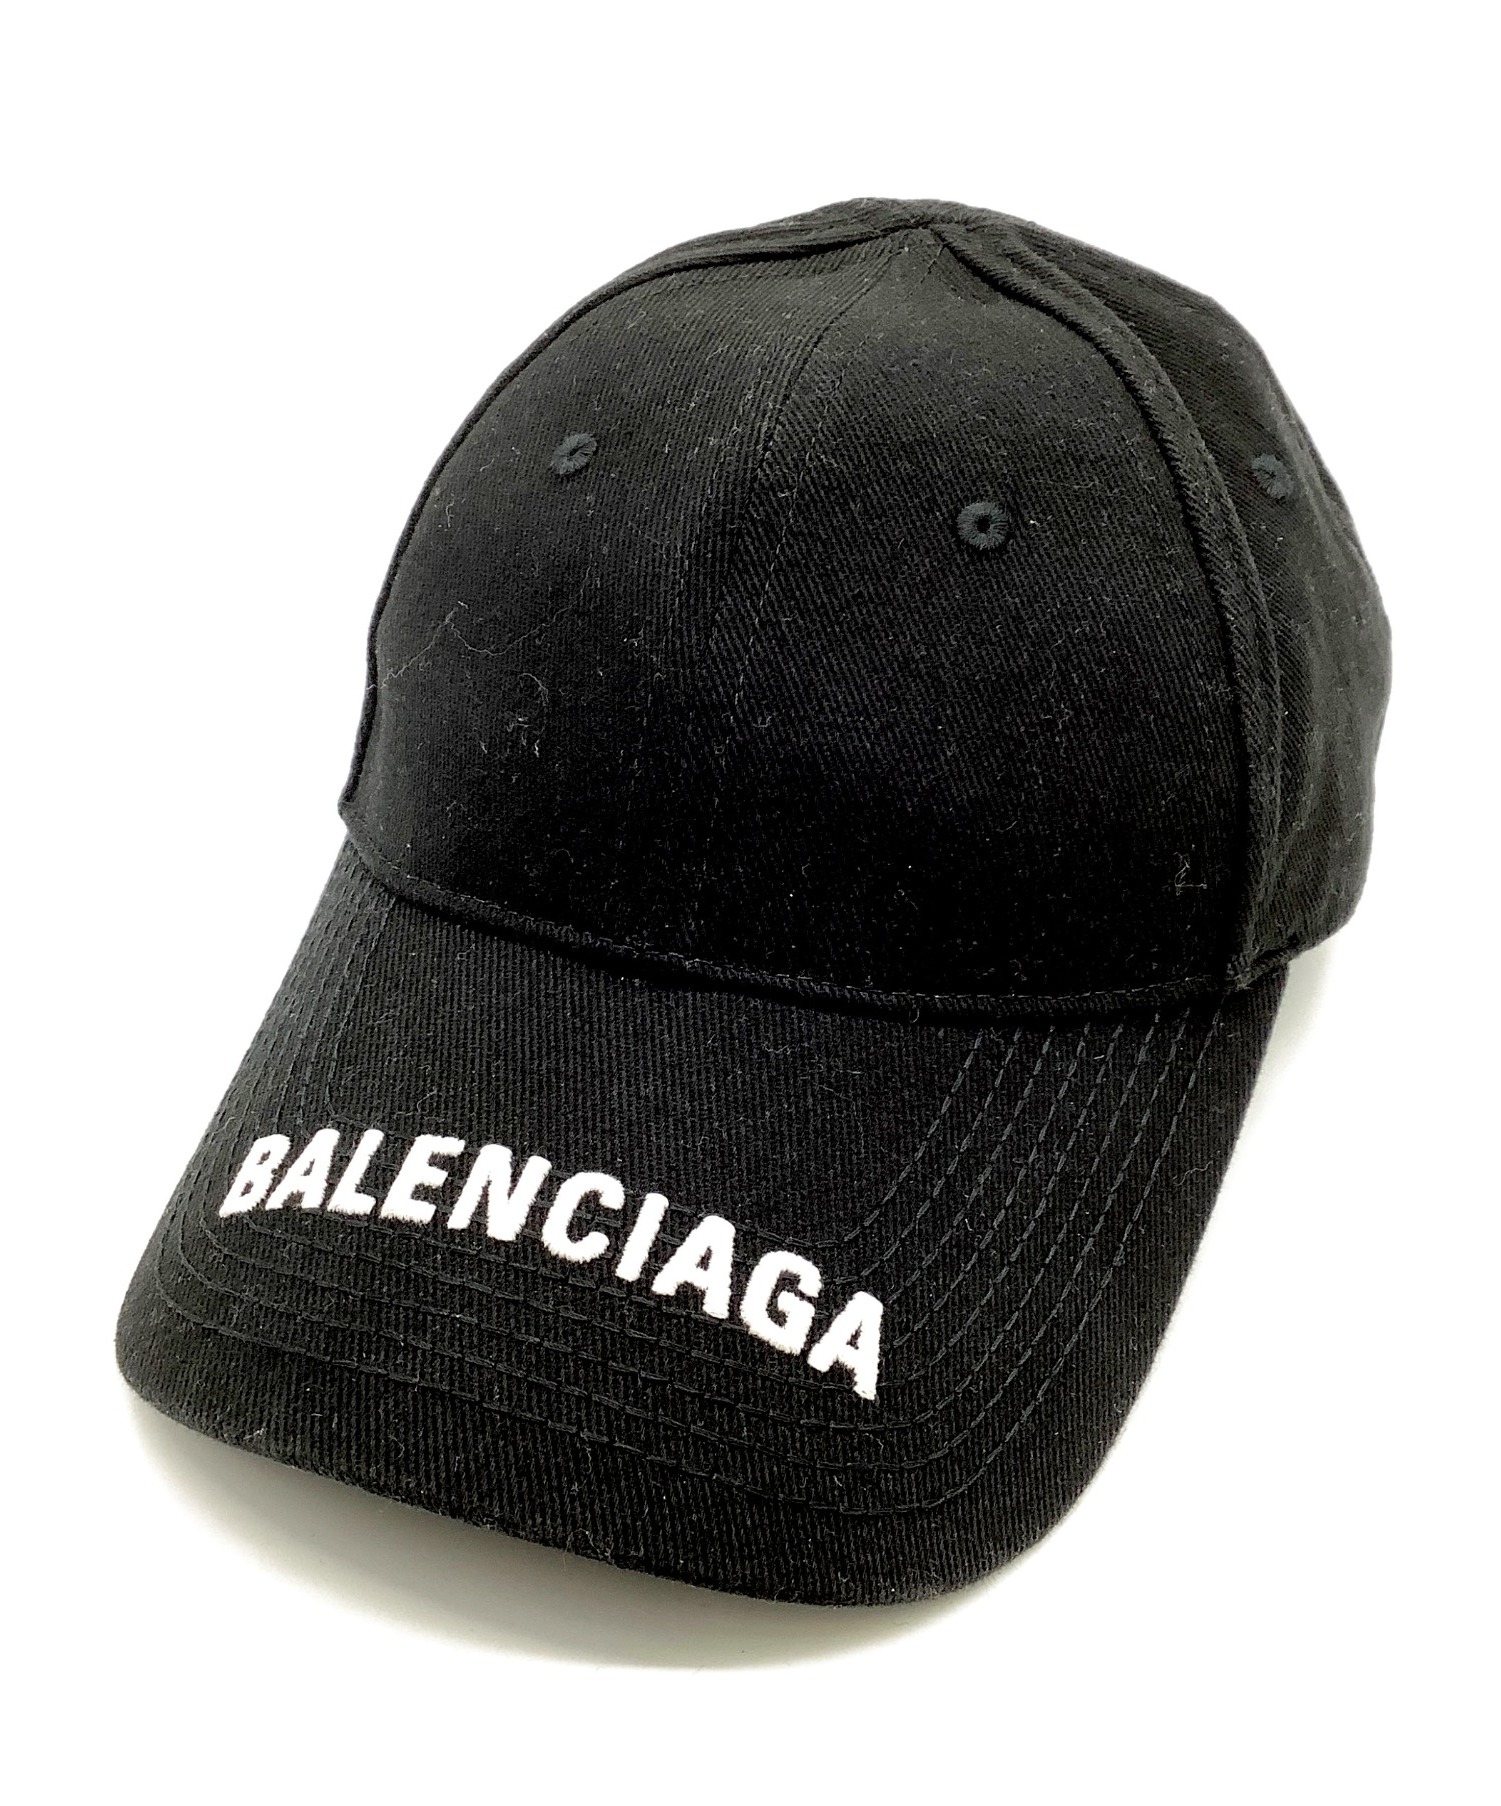 バレンシアガ キャップ 帽子